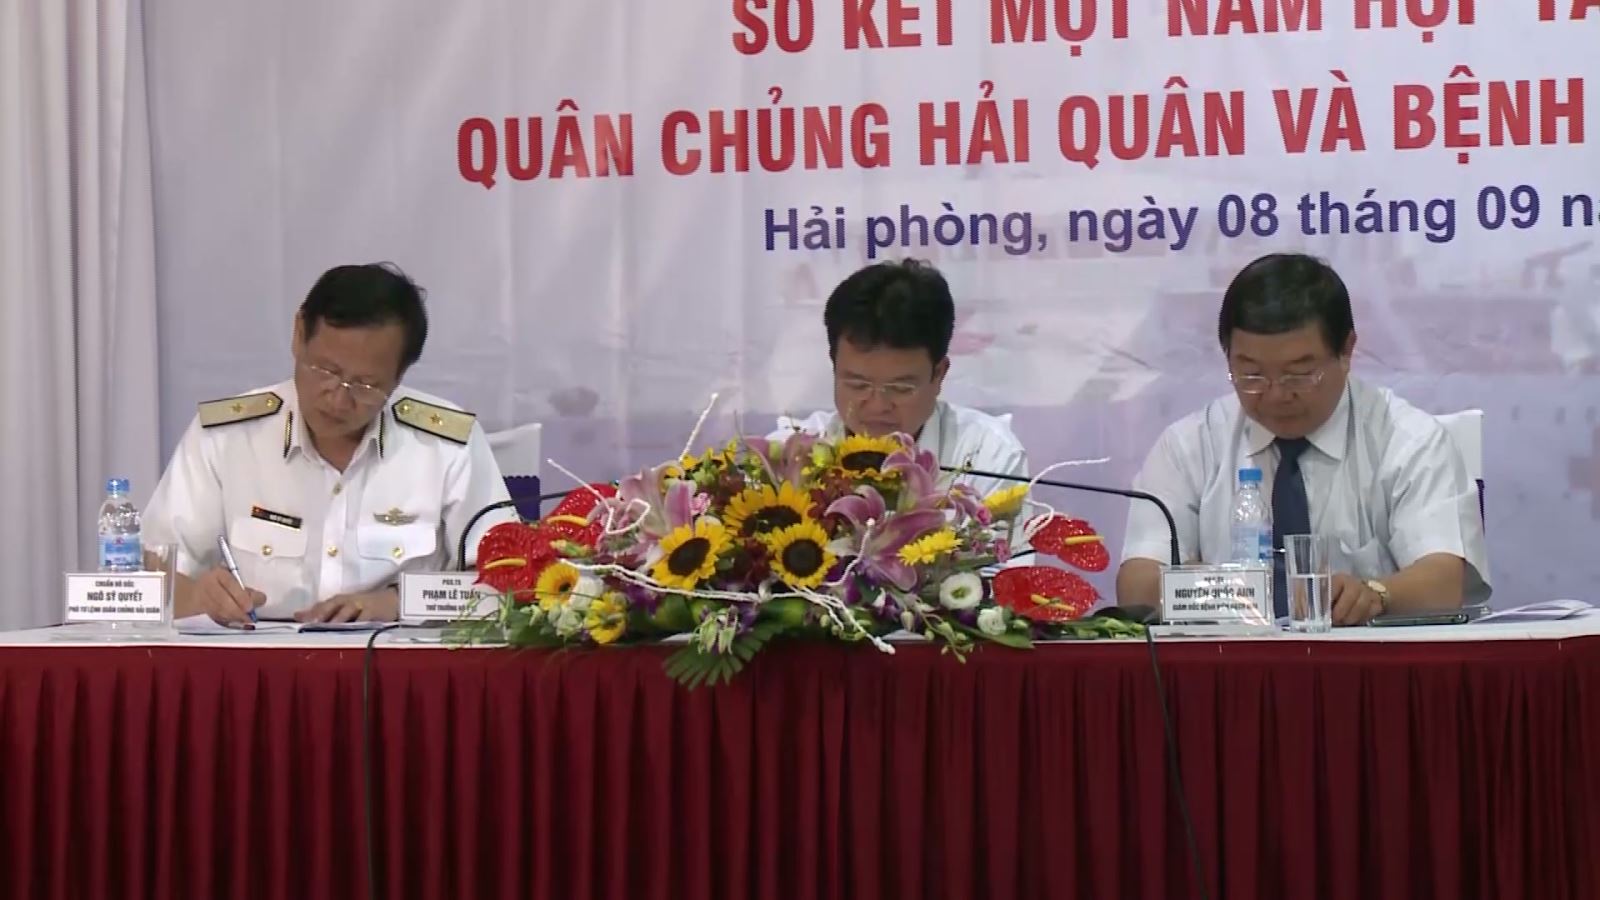 Hội nghị sơ kết 1 năm hợp tác giữa Quân chủng Hải quân và bệnh viện Bạch Mai